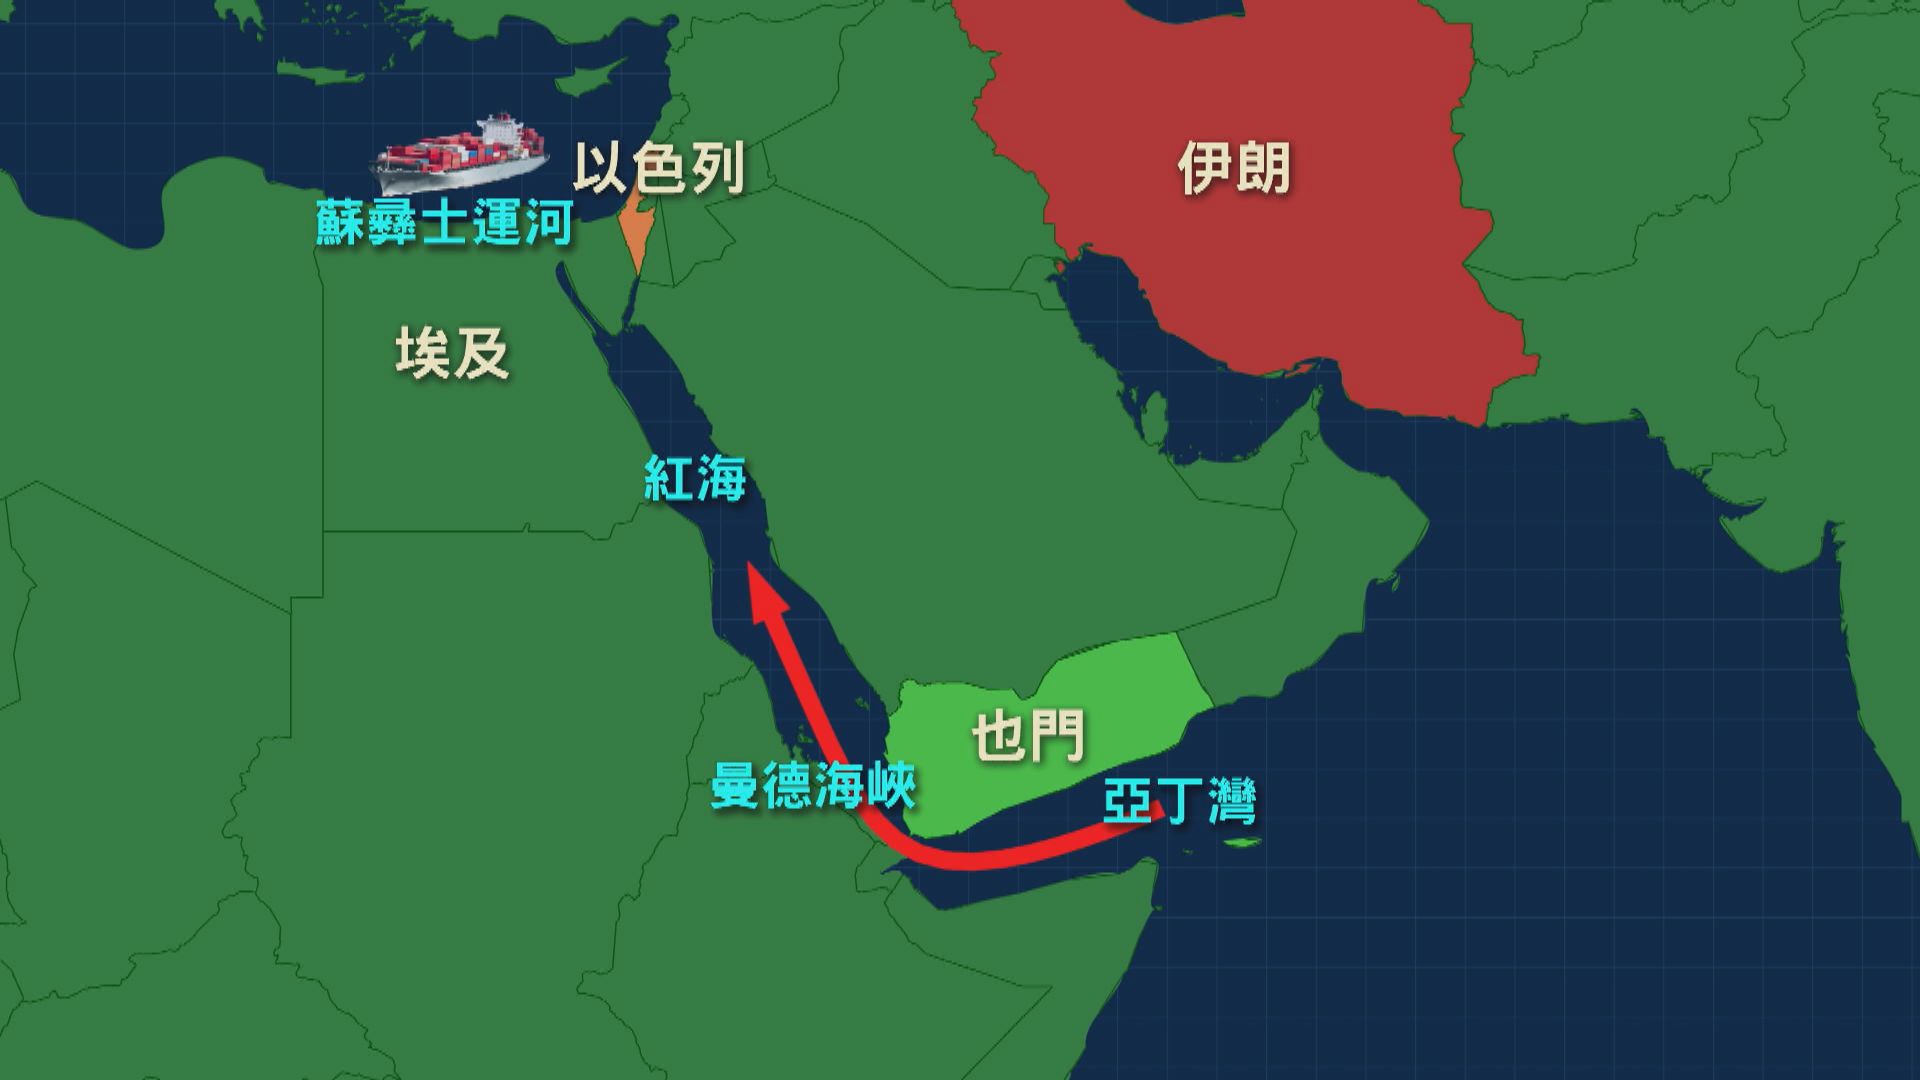 紅海局勢升溫 美軍擊沉胡塞武裝船艦 伊朗軍艦駛入